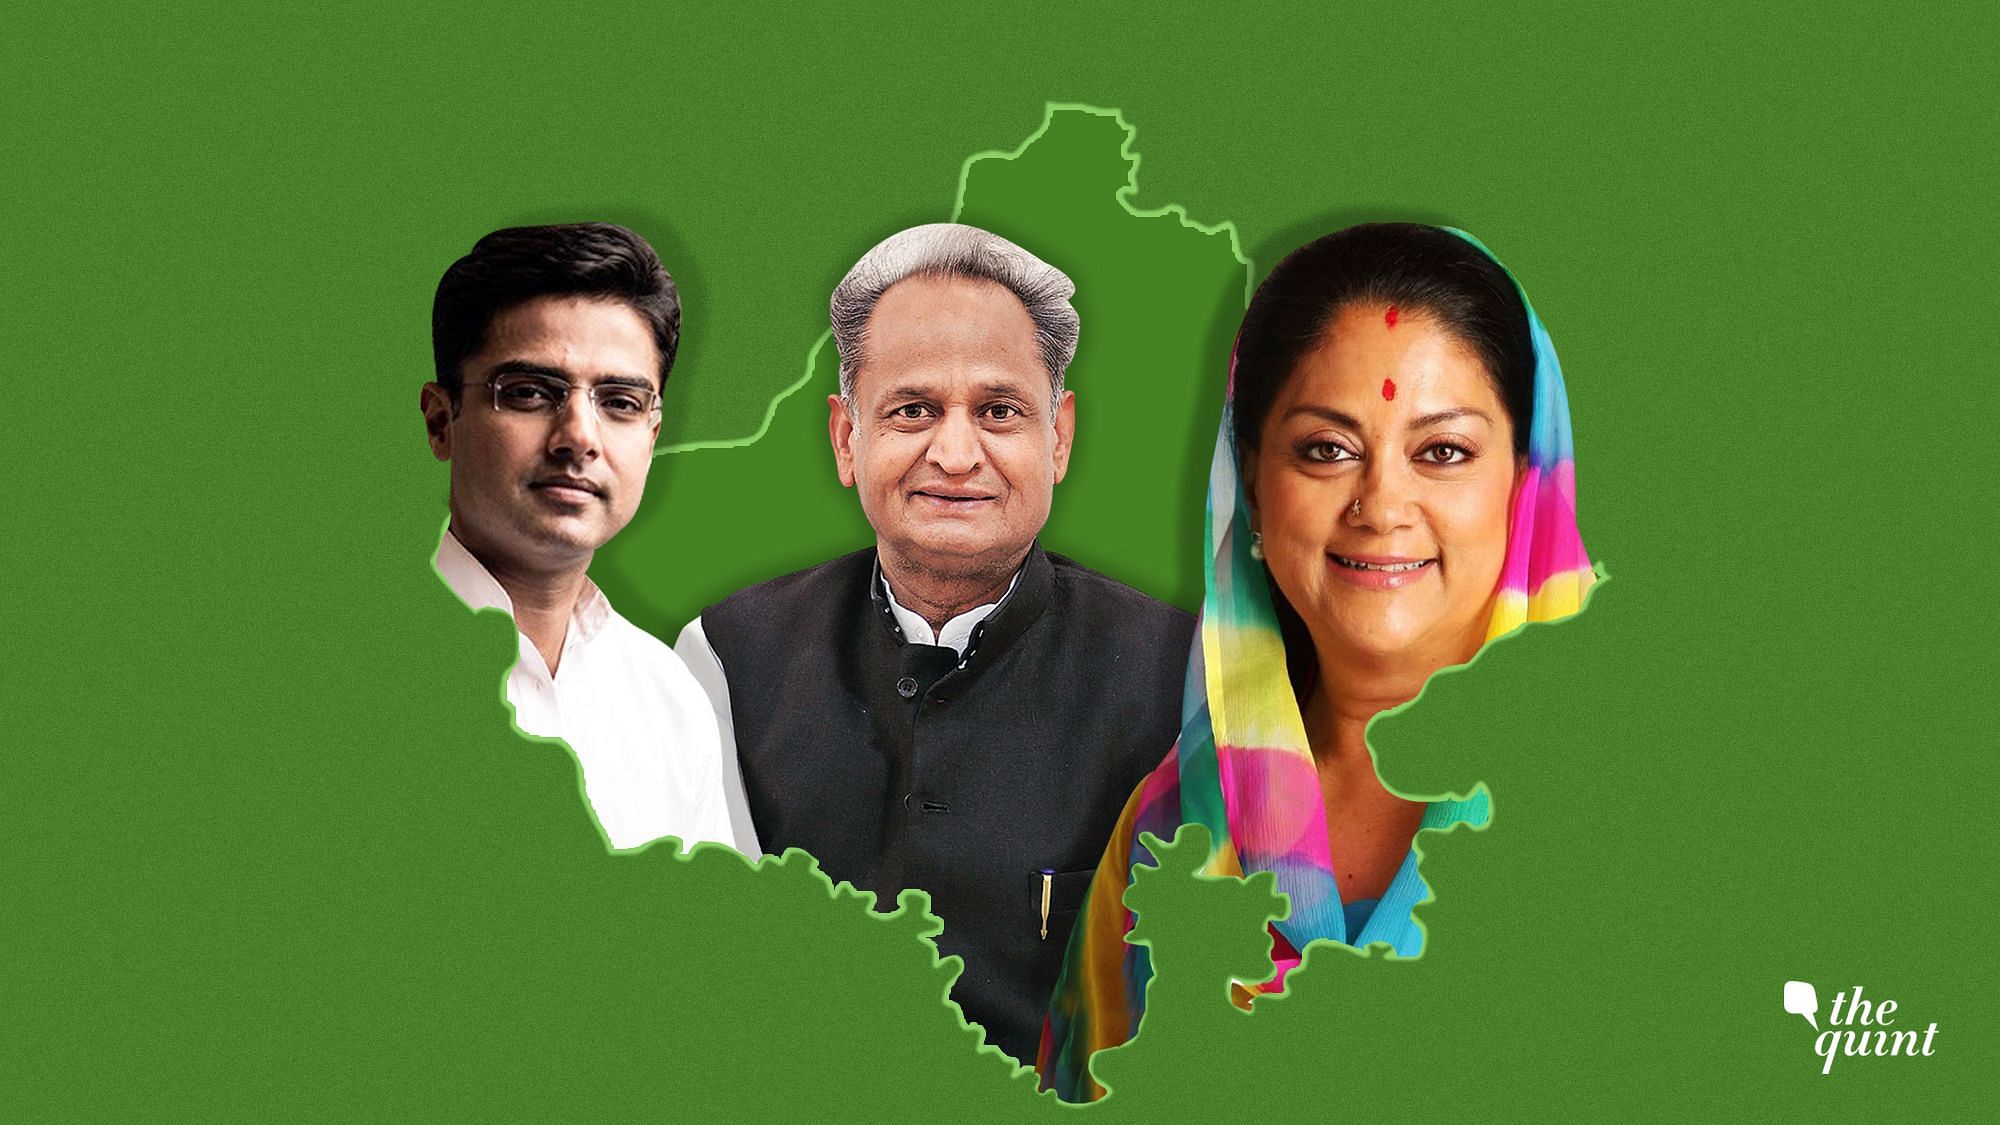 राजस्थान विधानसभा चुनाव 2018